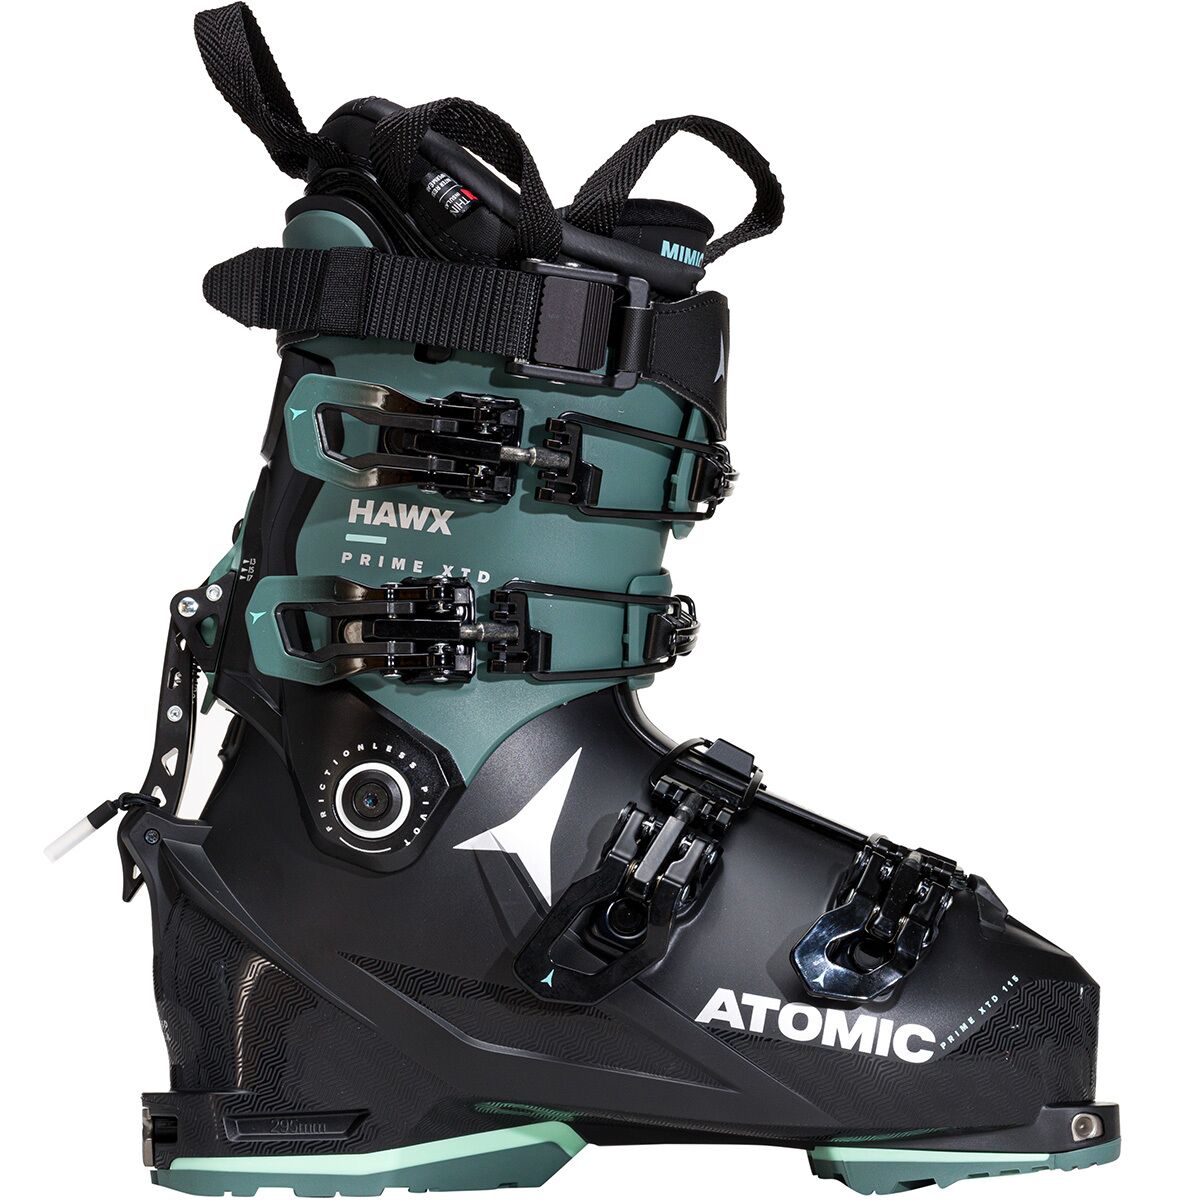 Ботинки hawx prime xtd 115 tech alpine touring — 2023 г. Atomic, черный